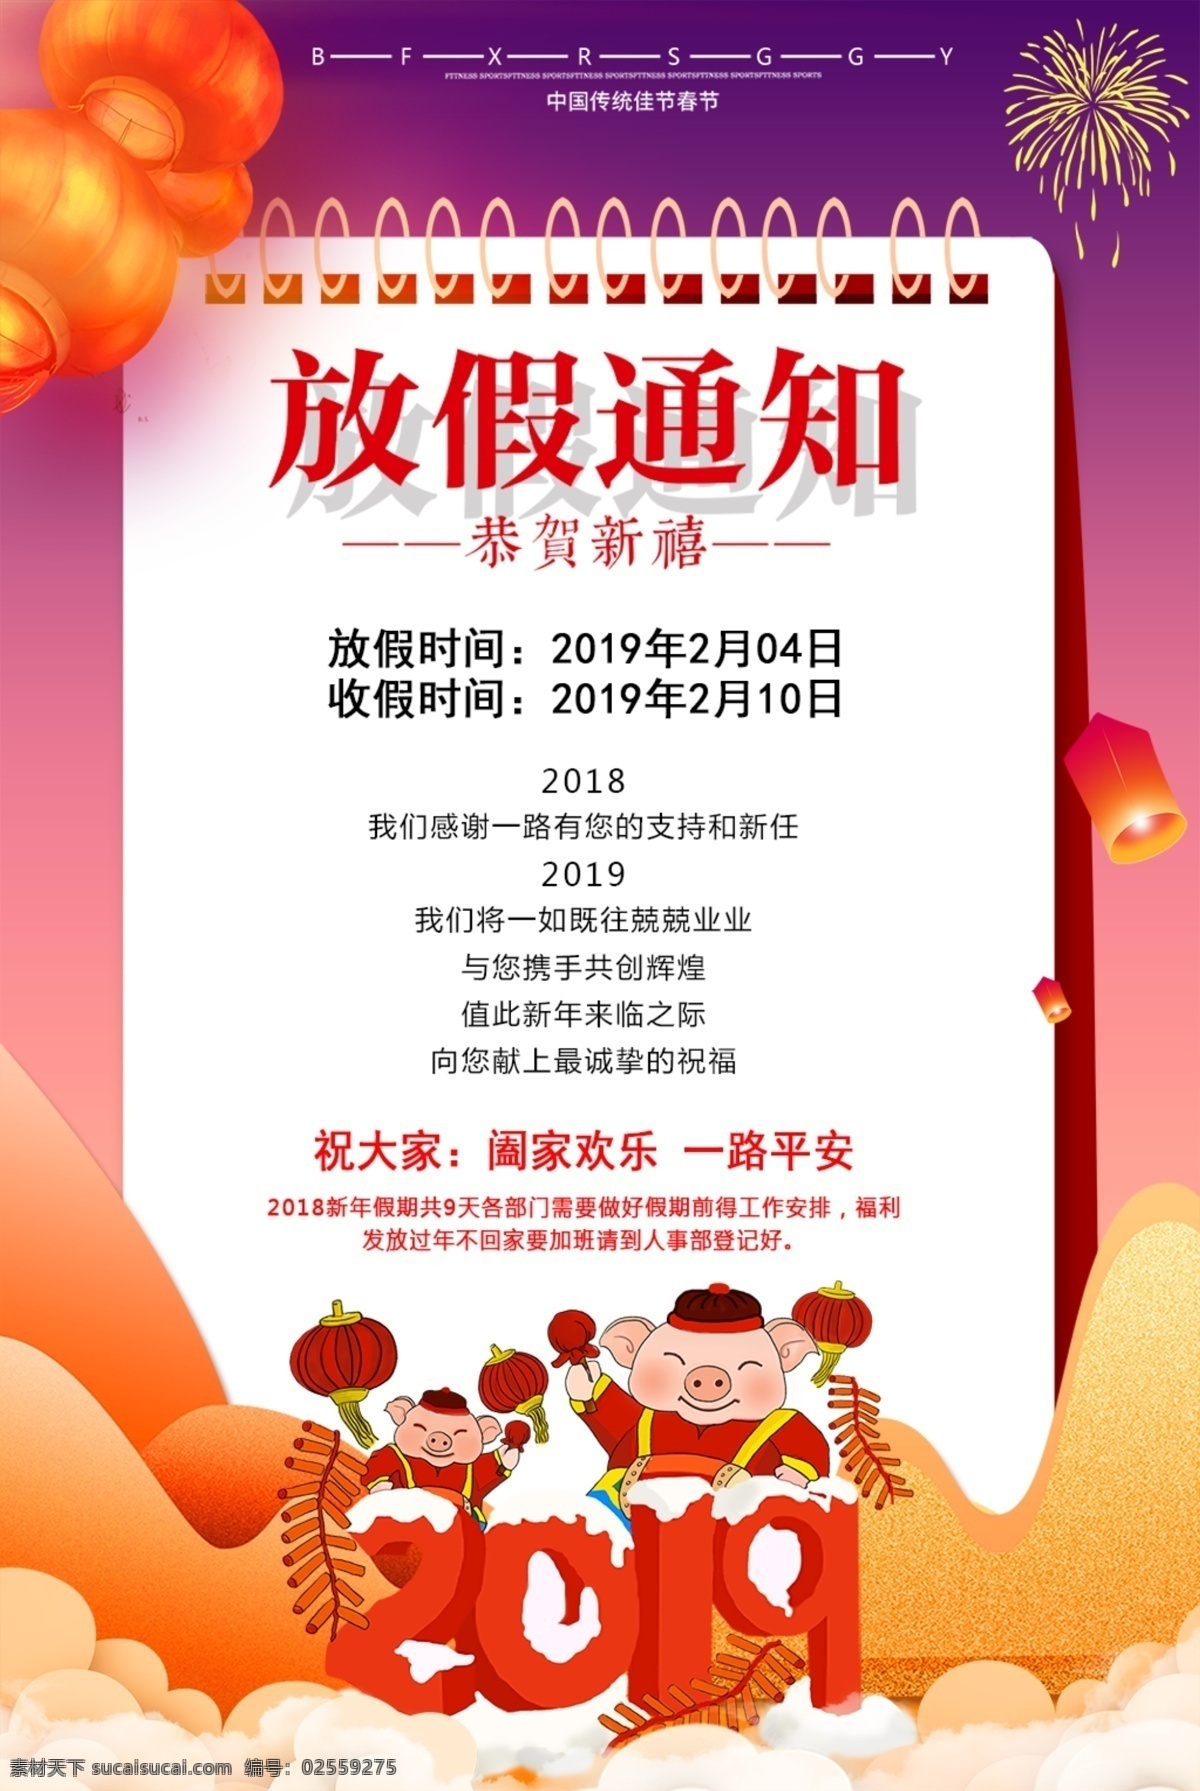 春节 放假 通知 海报 放假通知 2020放假 鼠年